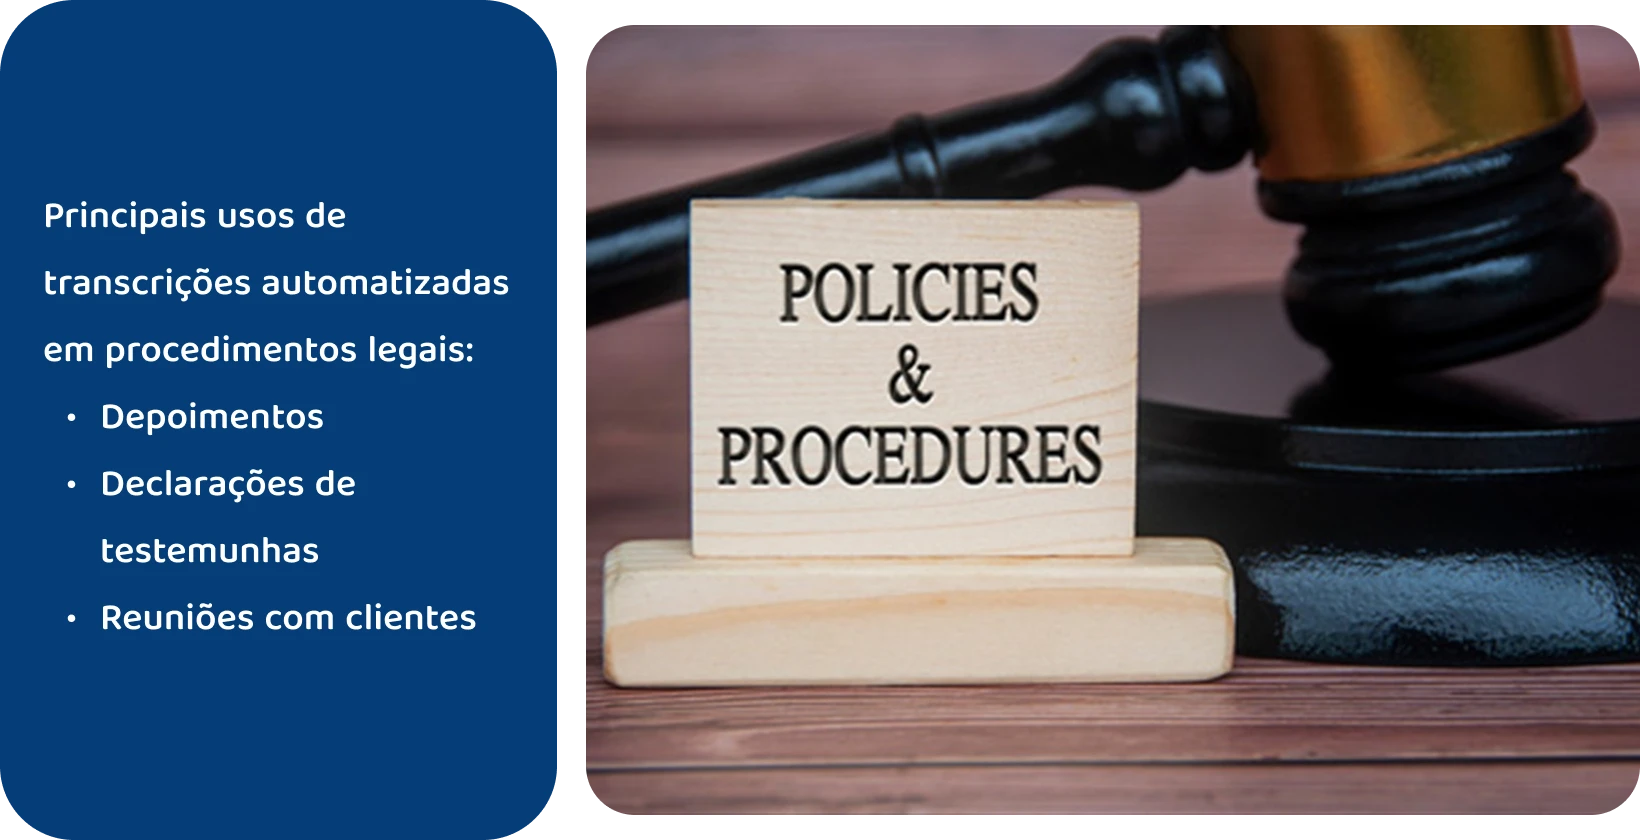 Marca ao lado da placa "Políticas e Procedimentos", representando os padrões legais atendidos por ferramentas de transcrição automatizadas.